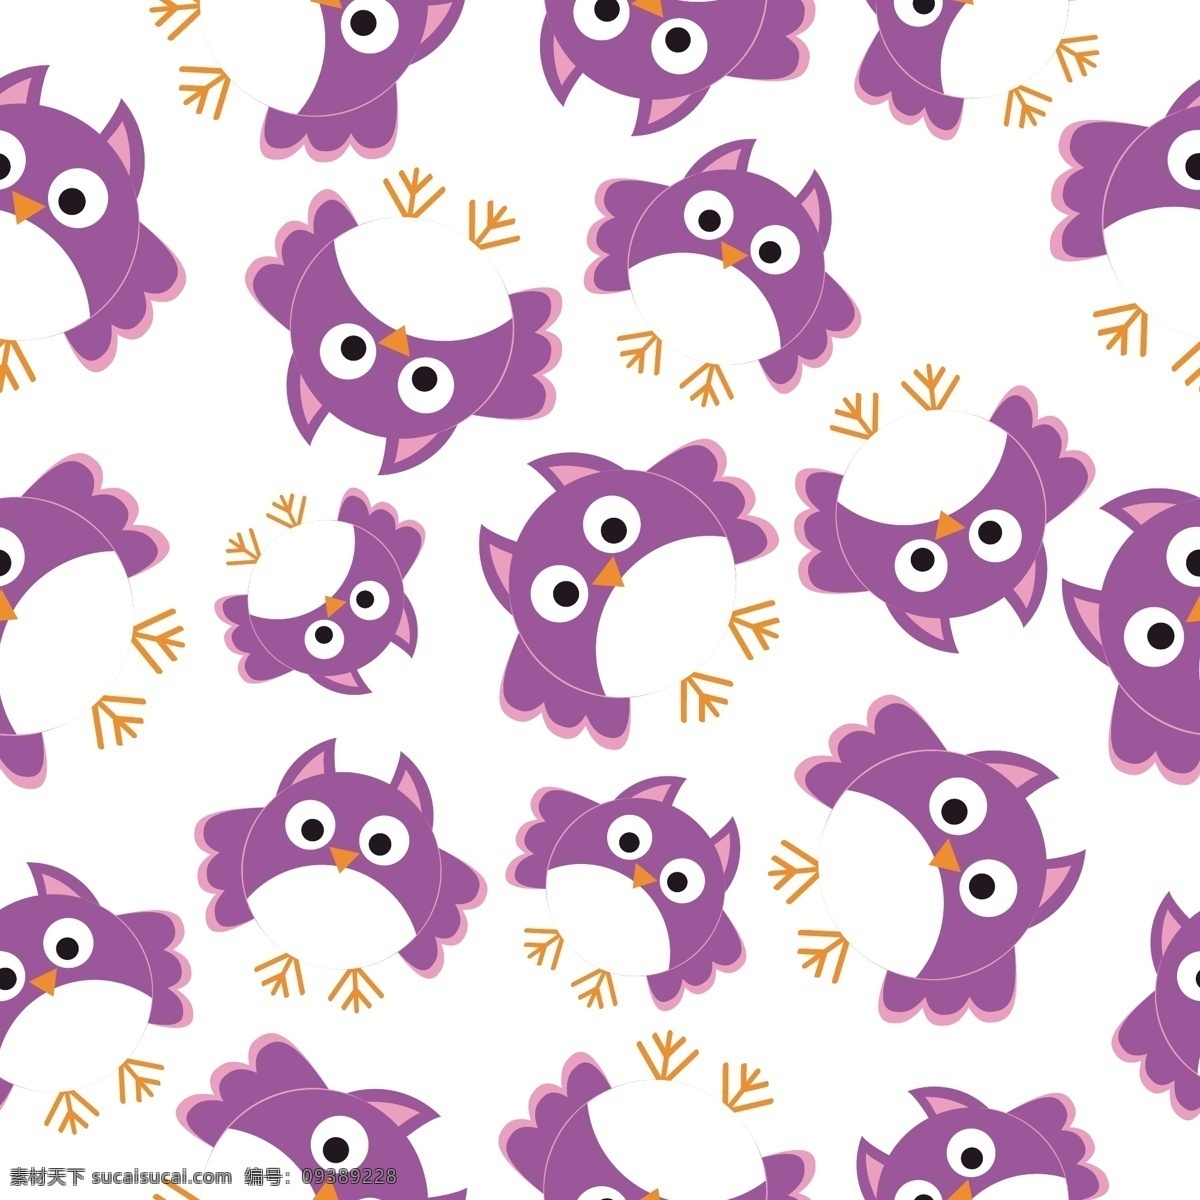 紫色 猫头鹰 装饰 图案 背景 紫色猫头鹰 装饰图案 淘宝 电视 墙 服装图案 抱枕图案 床单图案 染布印花 箱包装饰图案 布艺图案 墙纸图案